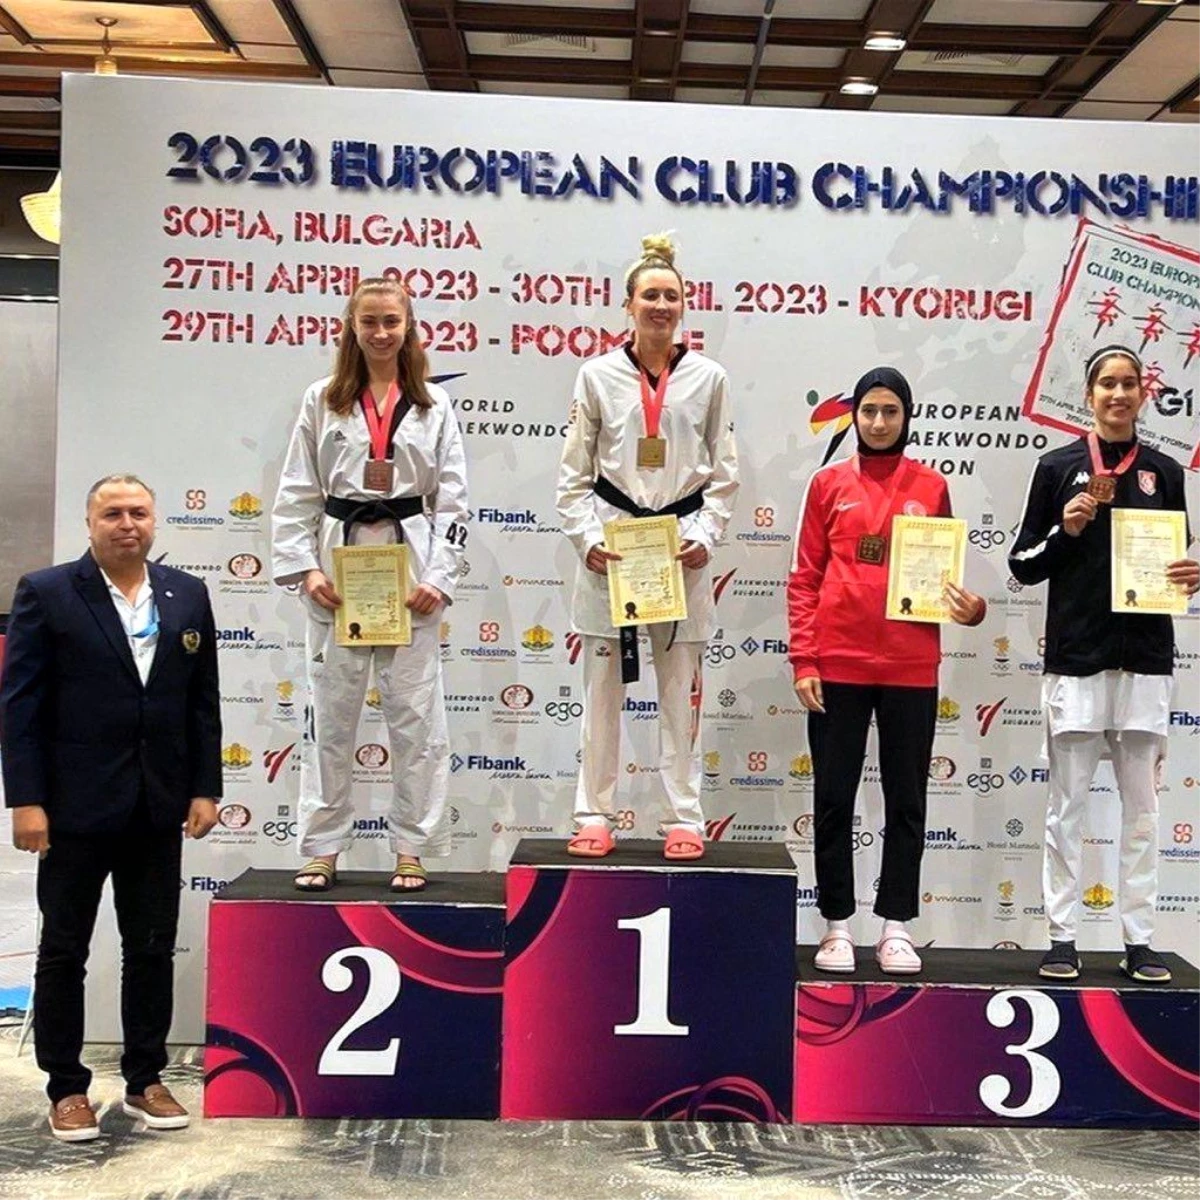 Milli Sporcu Gülse Polat, Avrupa Kulüpler Arası Taekwondo Şampiyonasında 3. Oldu